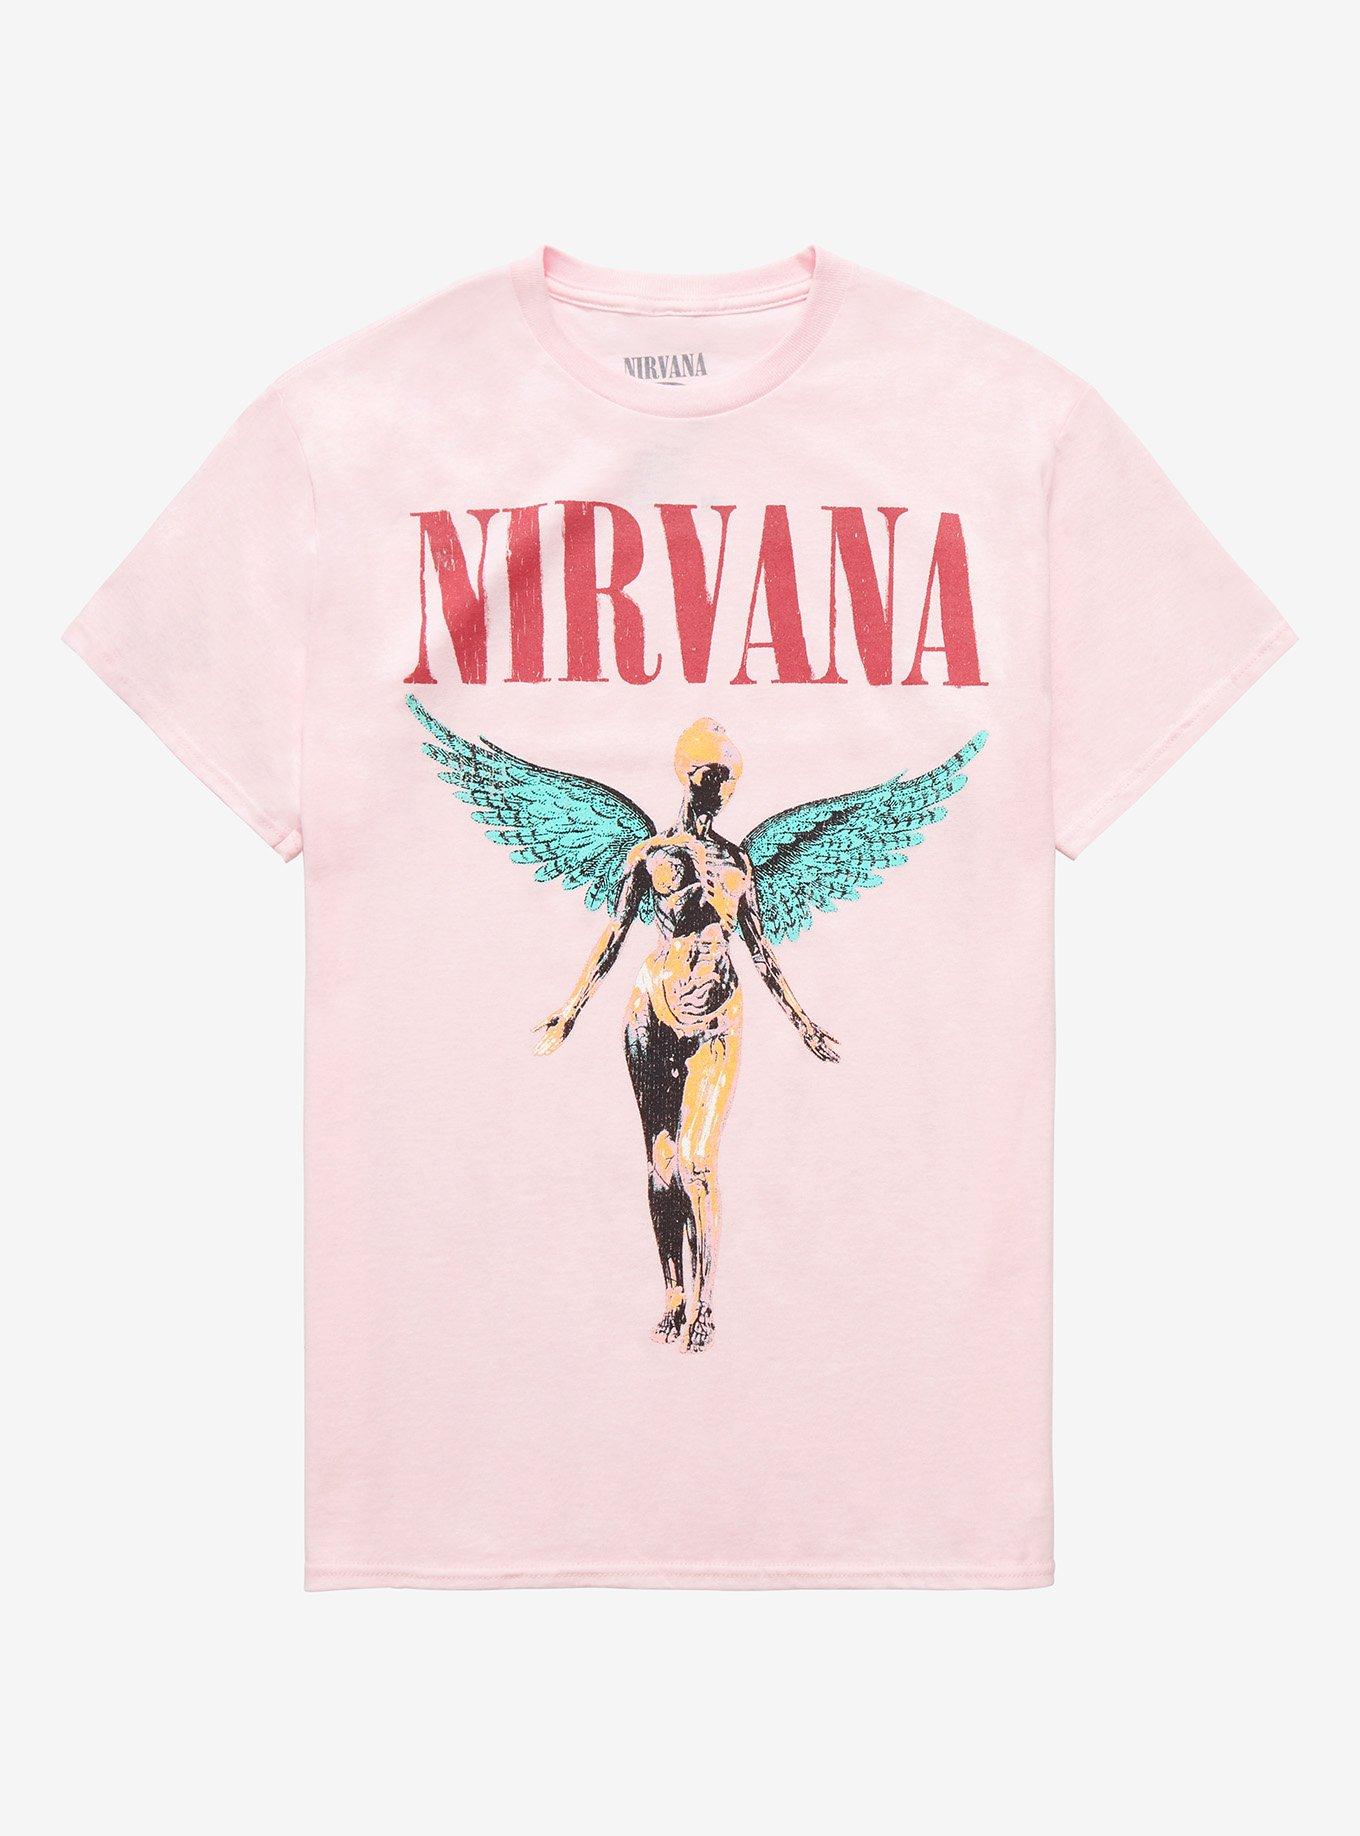 Nirvana In Utero Pastel Boyfriend Fit Girls T-Shirt, PINK, hi-res